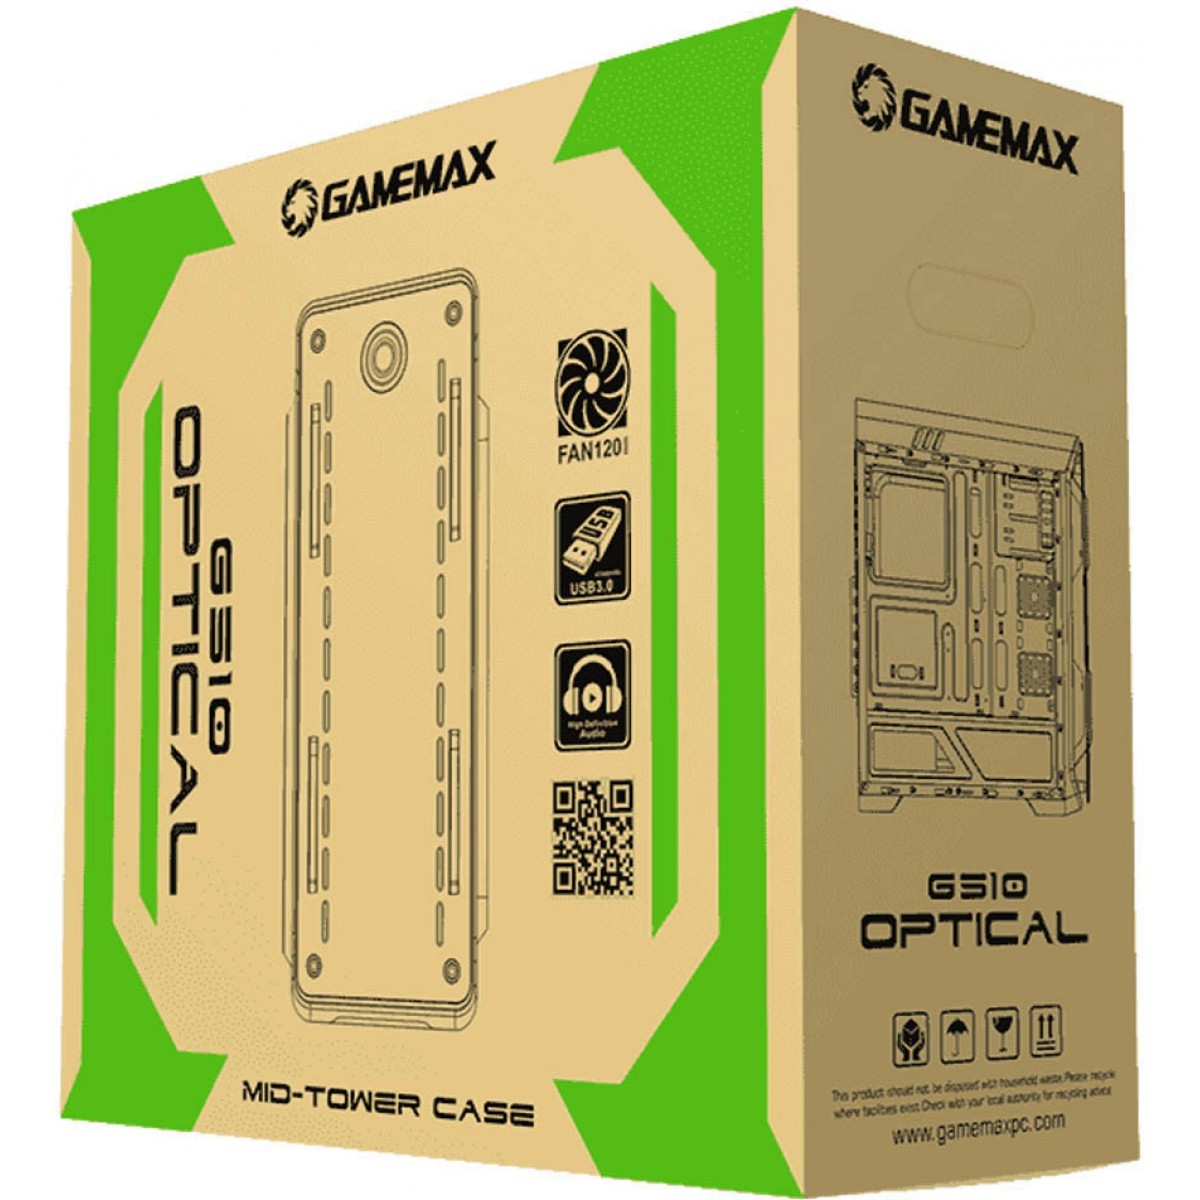 Gabinete Gamemax S612 USB 3.0 C/ Fonte 300W 80 Plus Bronze - Preto - Gamemax  Oficial